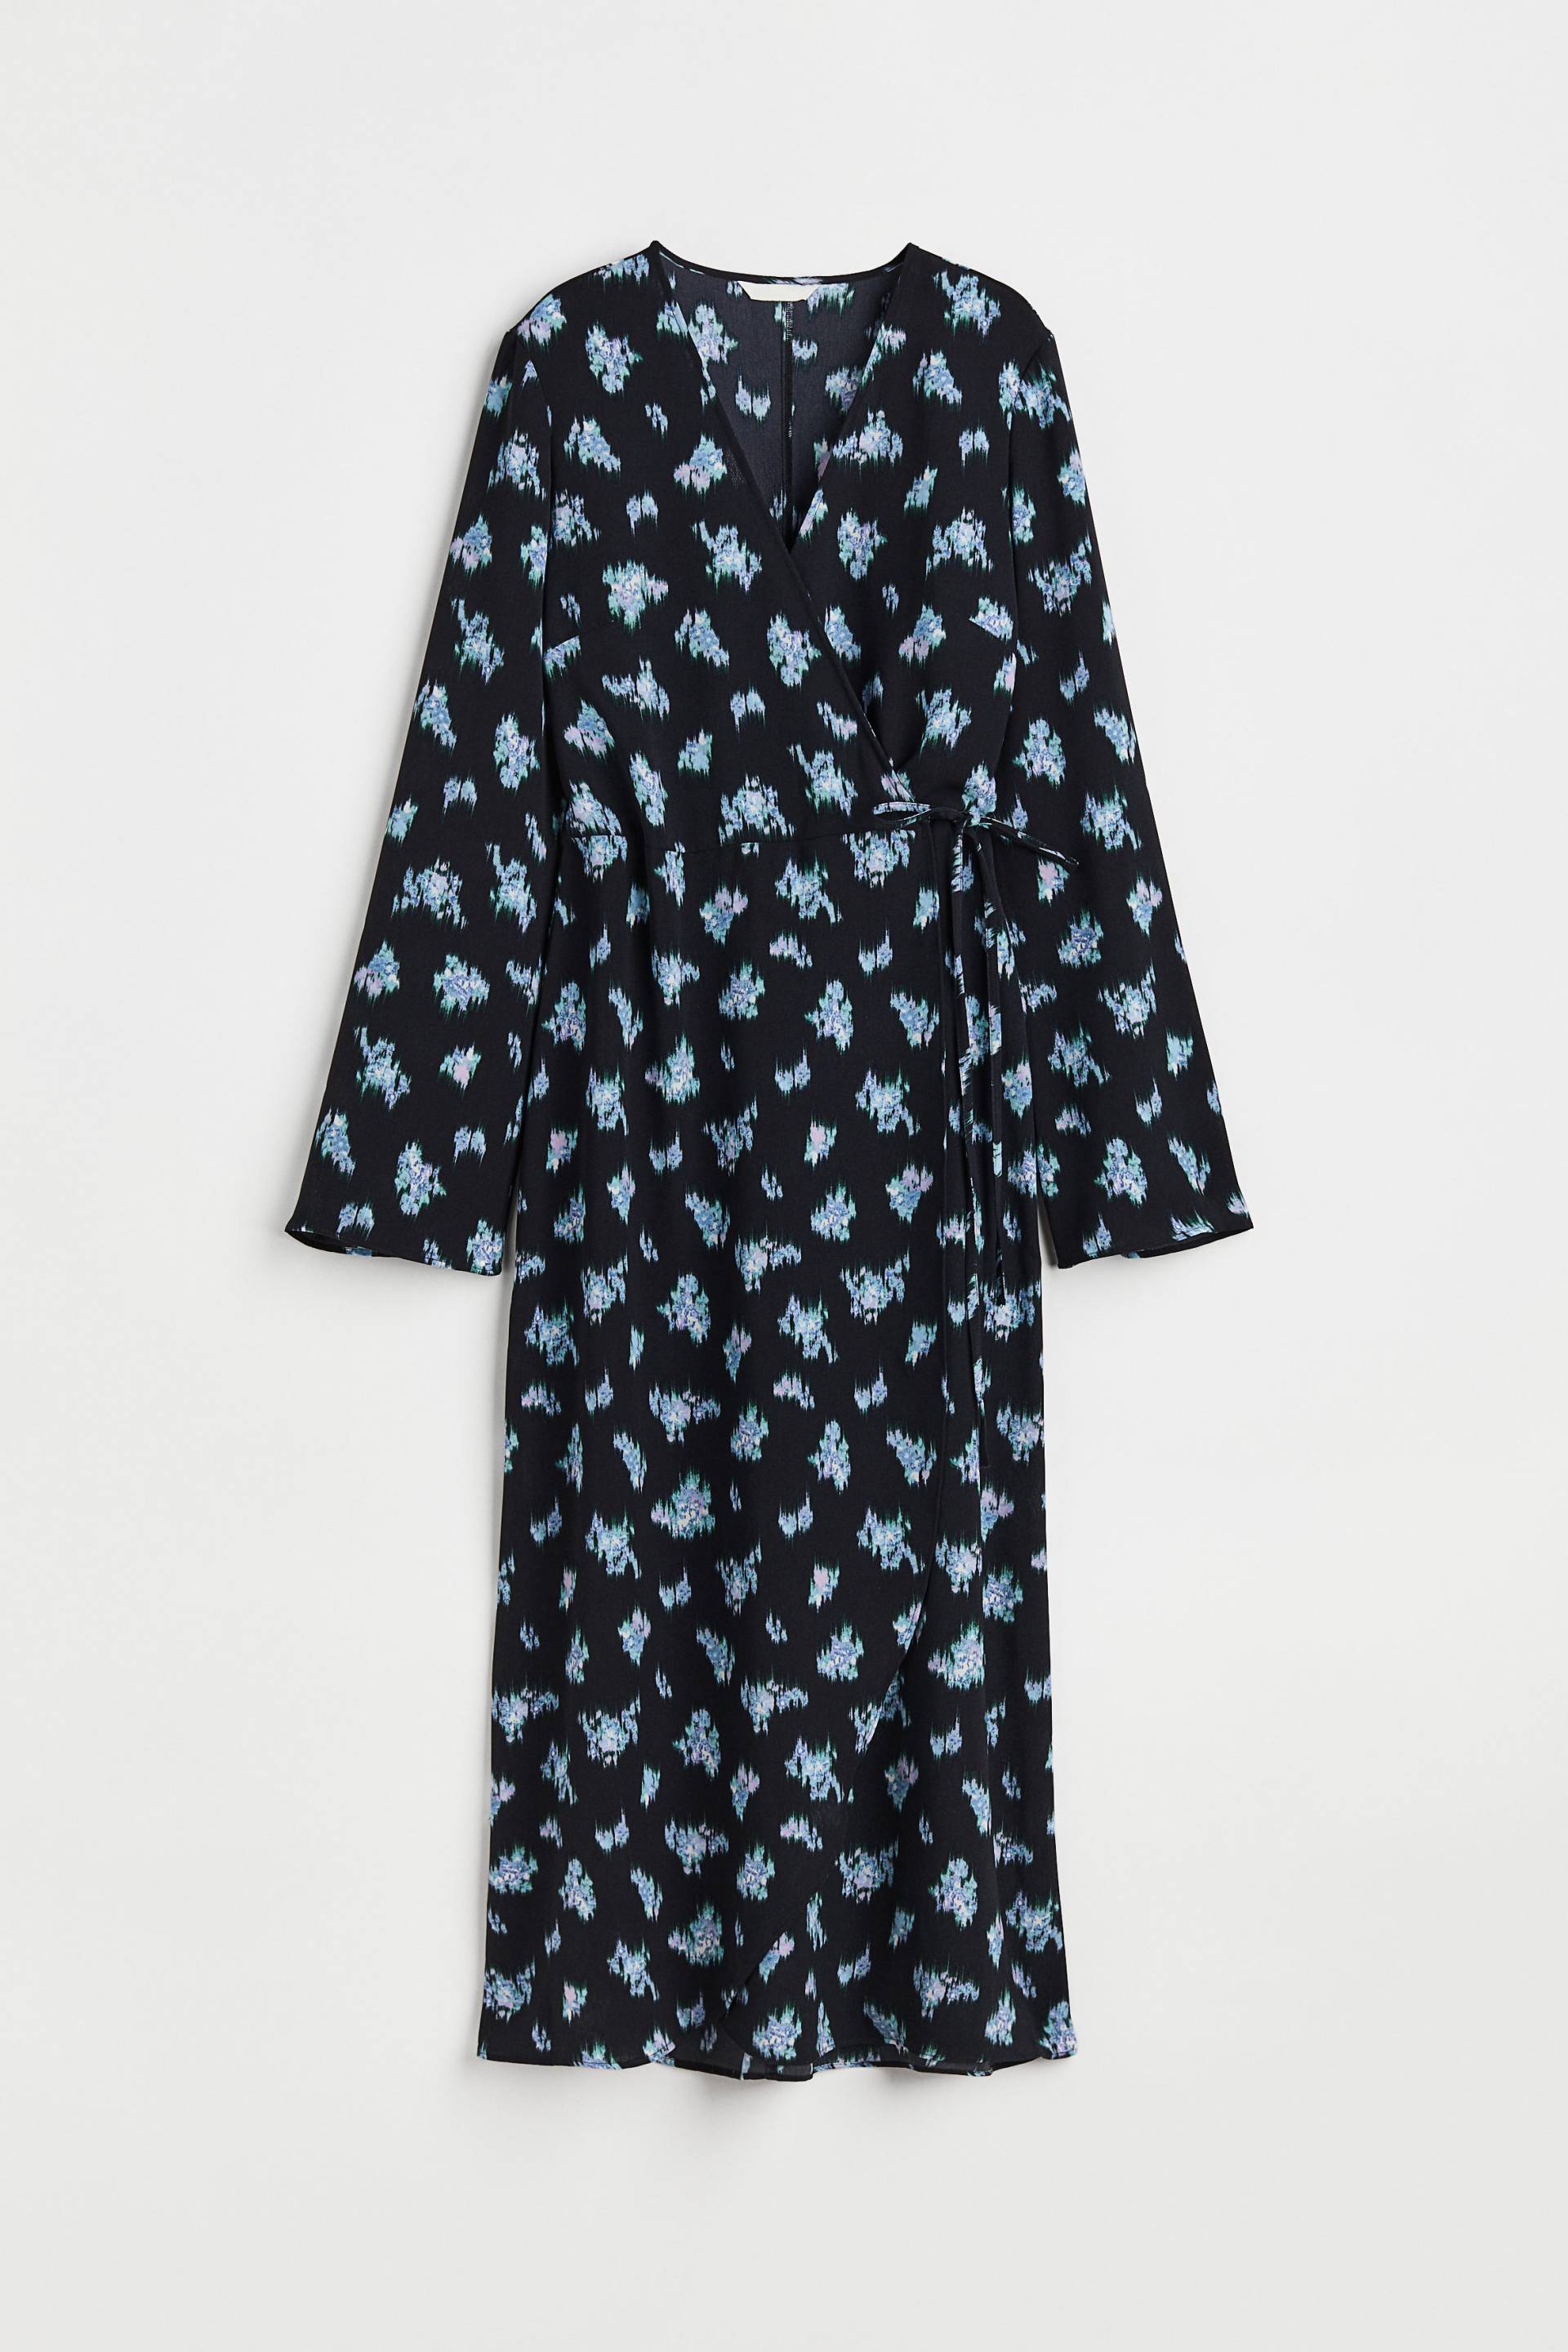 H&M Wickelkleid aus Crêpe Marineblau/Gemustert, Alltagskleider in Größe XS. Farbe: Navy/patterned von H&M